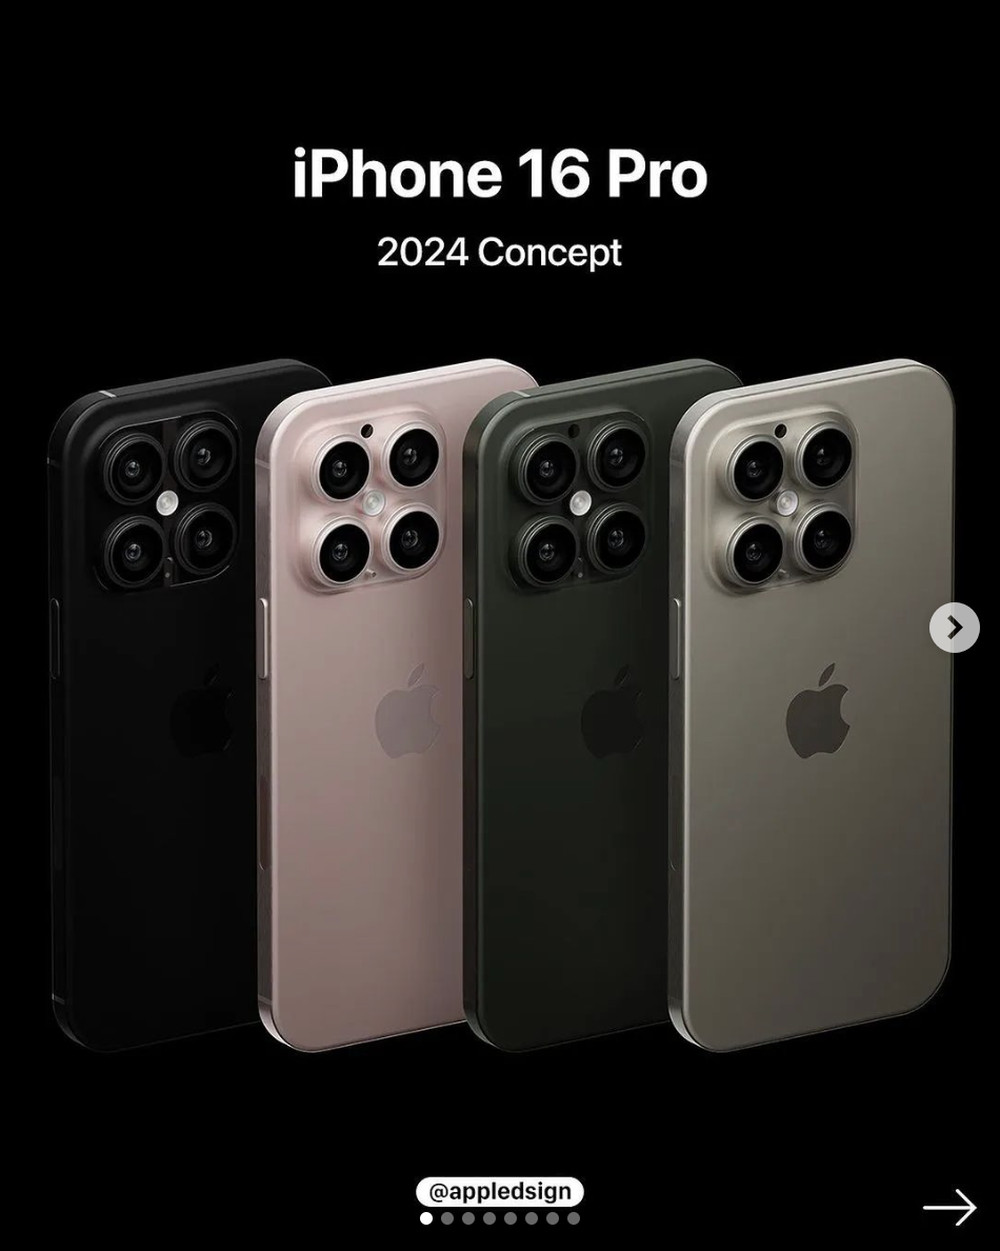 iPhone 16 hé lộ giao diện mới, thay đổi thiết kế với 4 camera